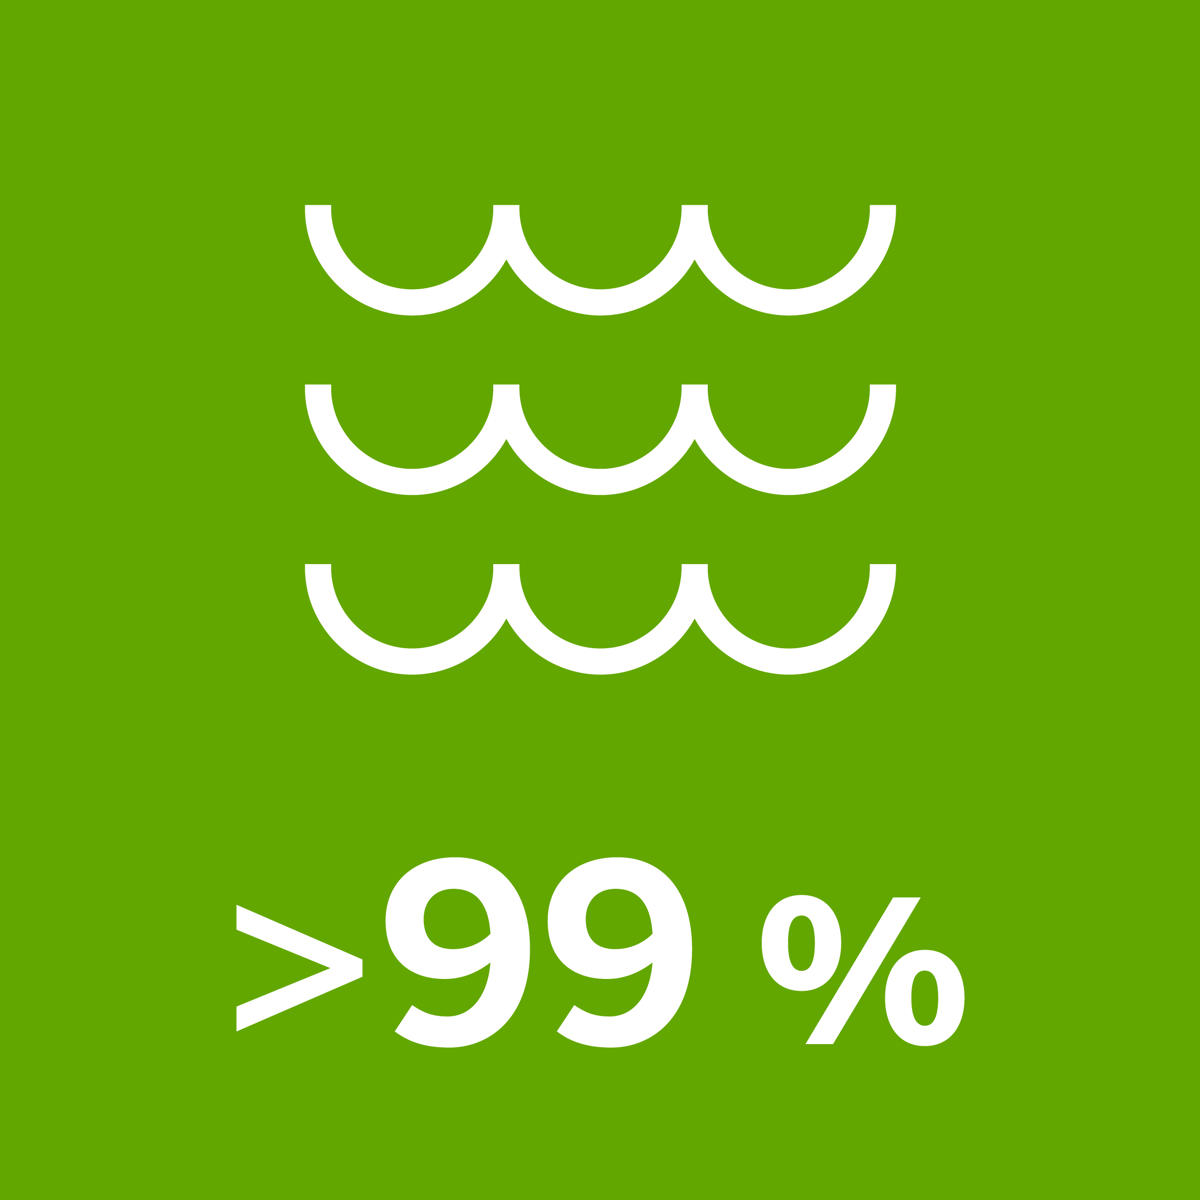 >99 % wykorzystywanej przez nas wody to wody powierzchniowe z jezior i rzek.